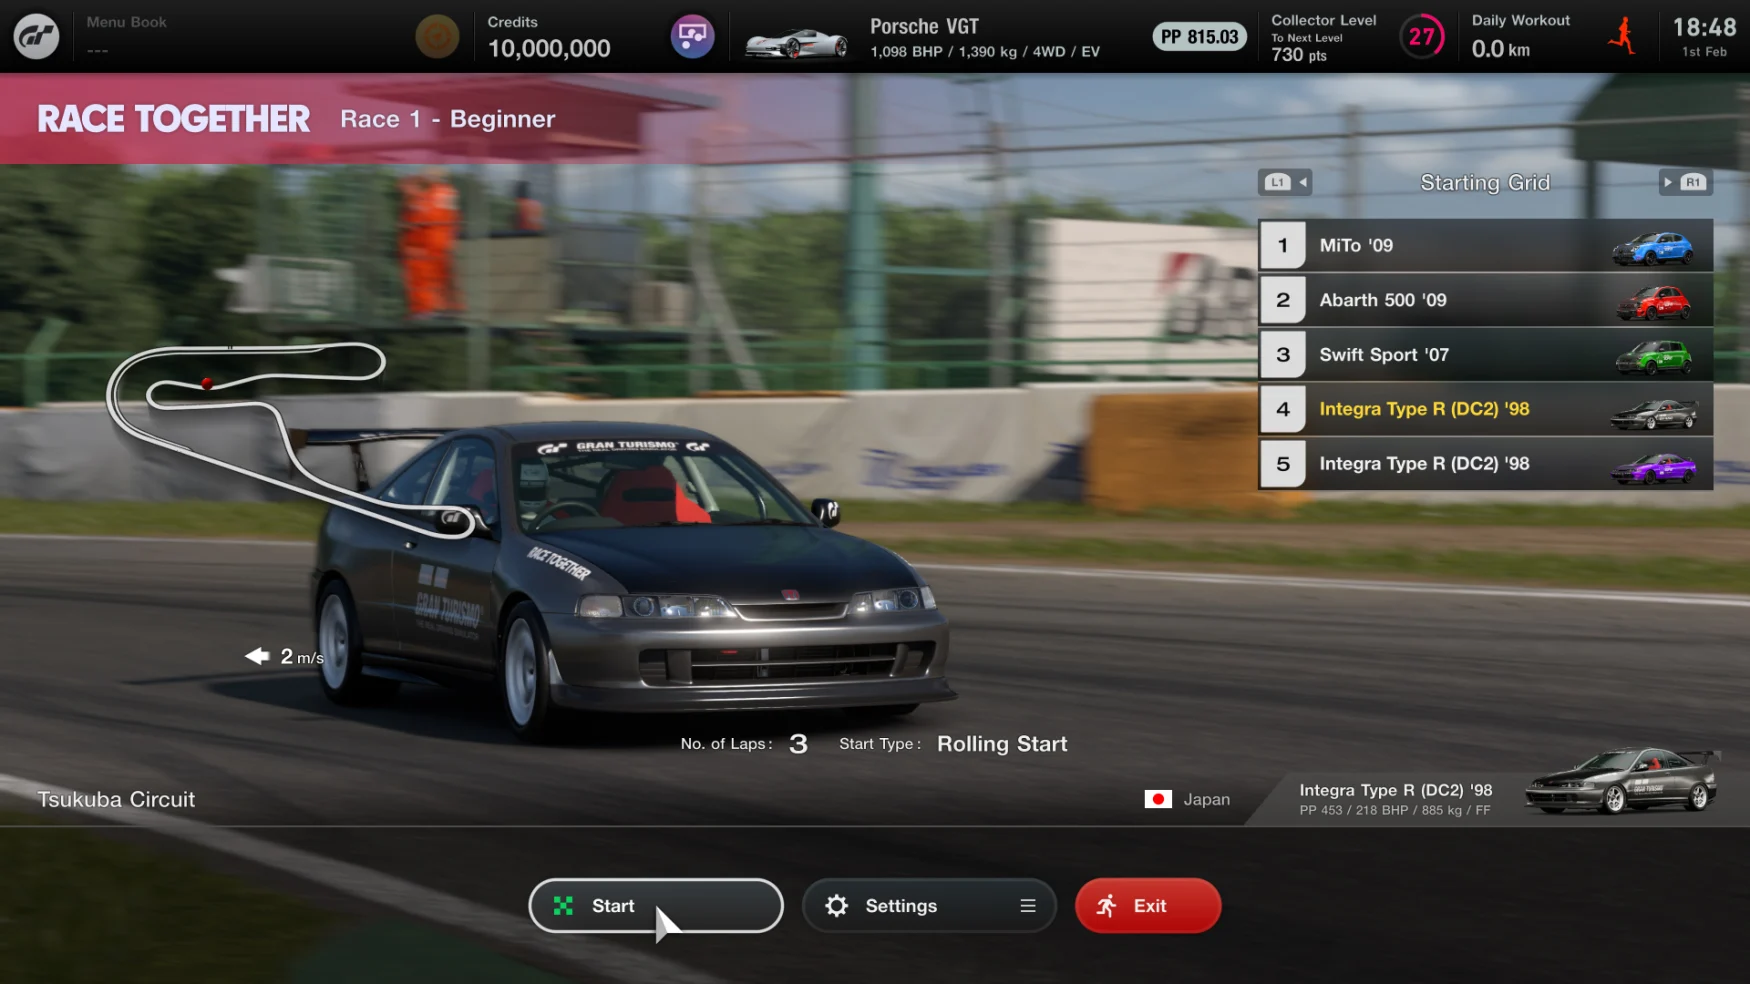 Captures d'écran de divers aspects de l'expérience de course GT Sophy